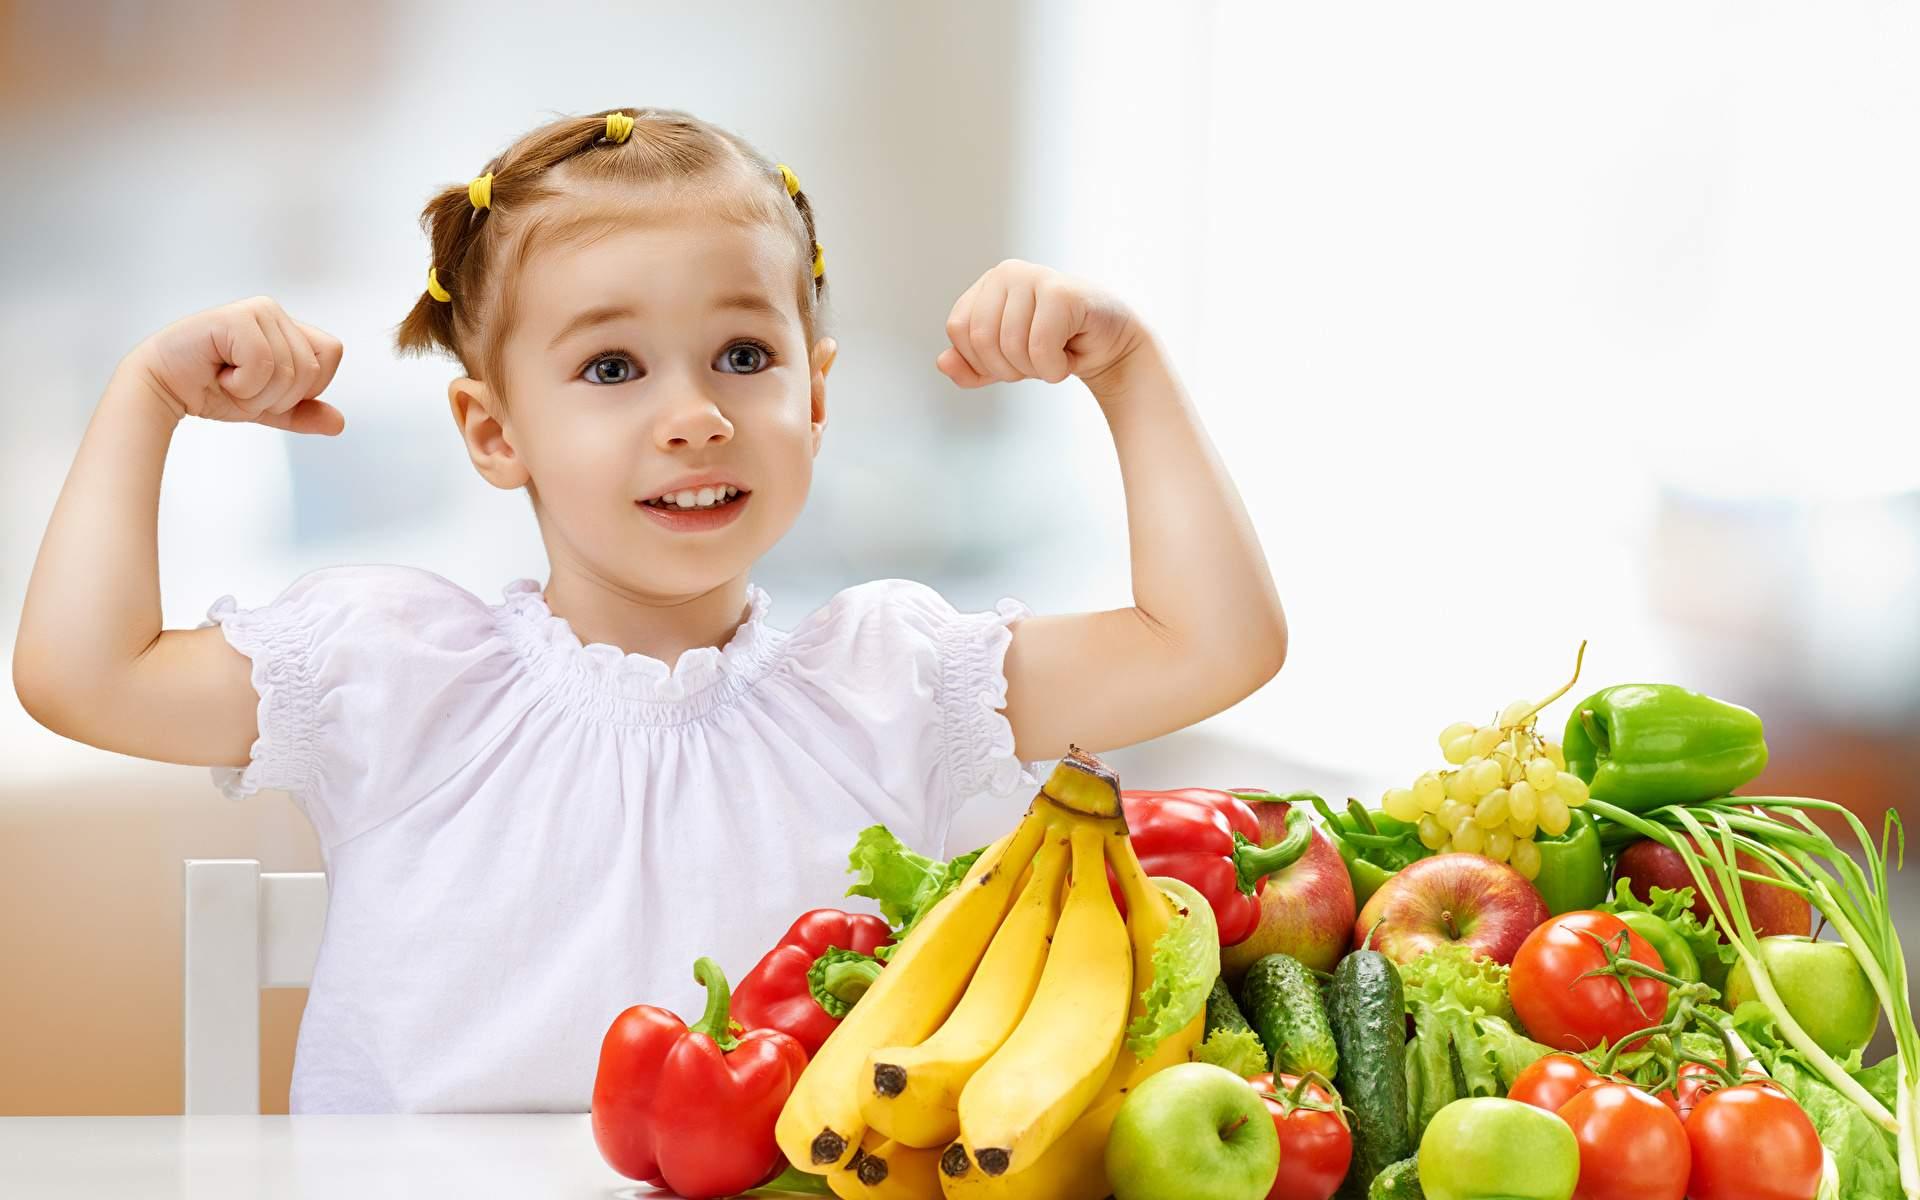 Voće i povrće koje koristite neka bude svježe - Avaz